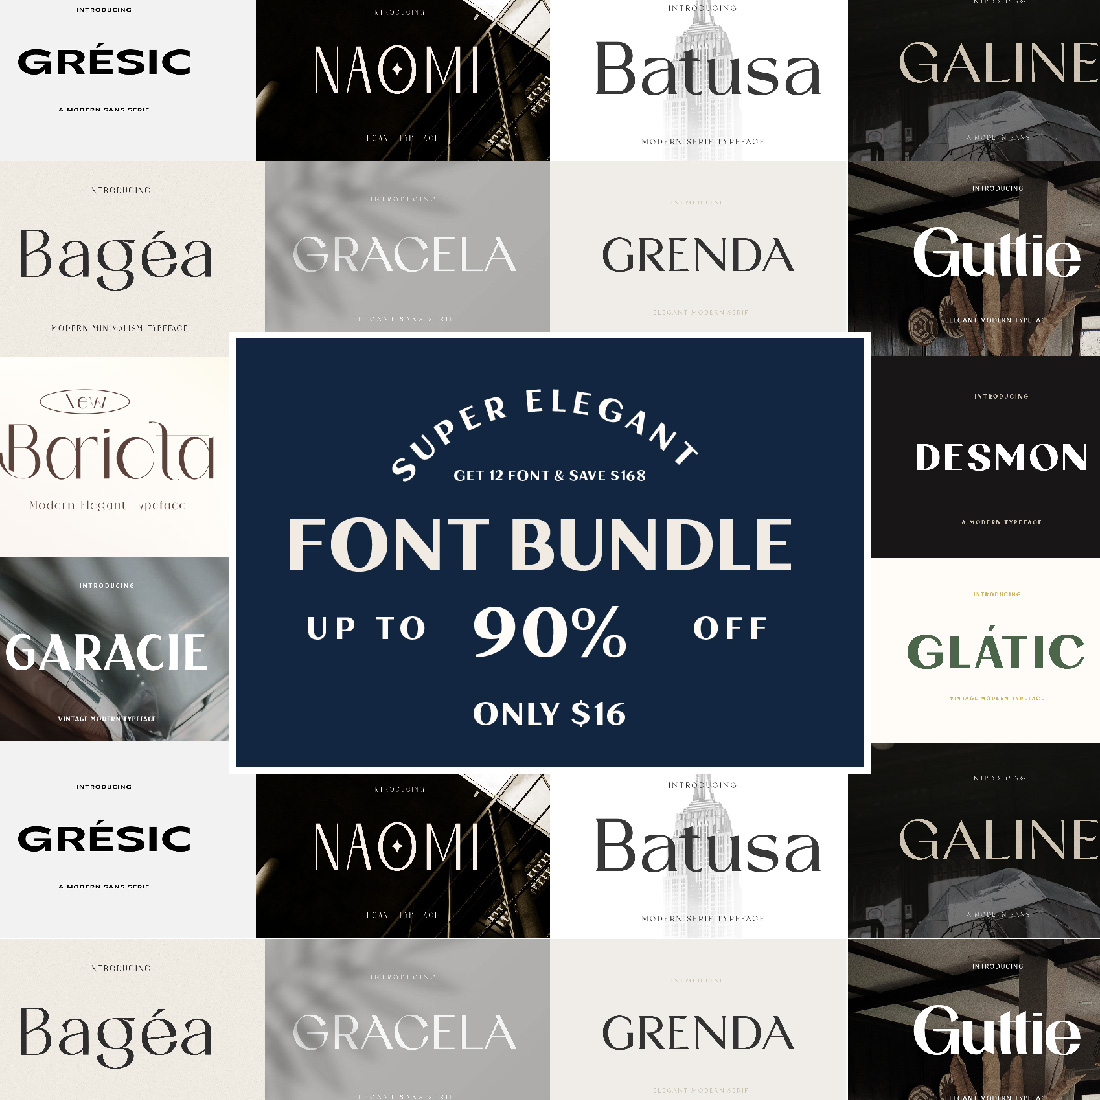 12 Premium Elegant Modern Fonts Bundle - Only $16 cover image.